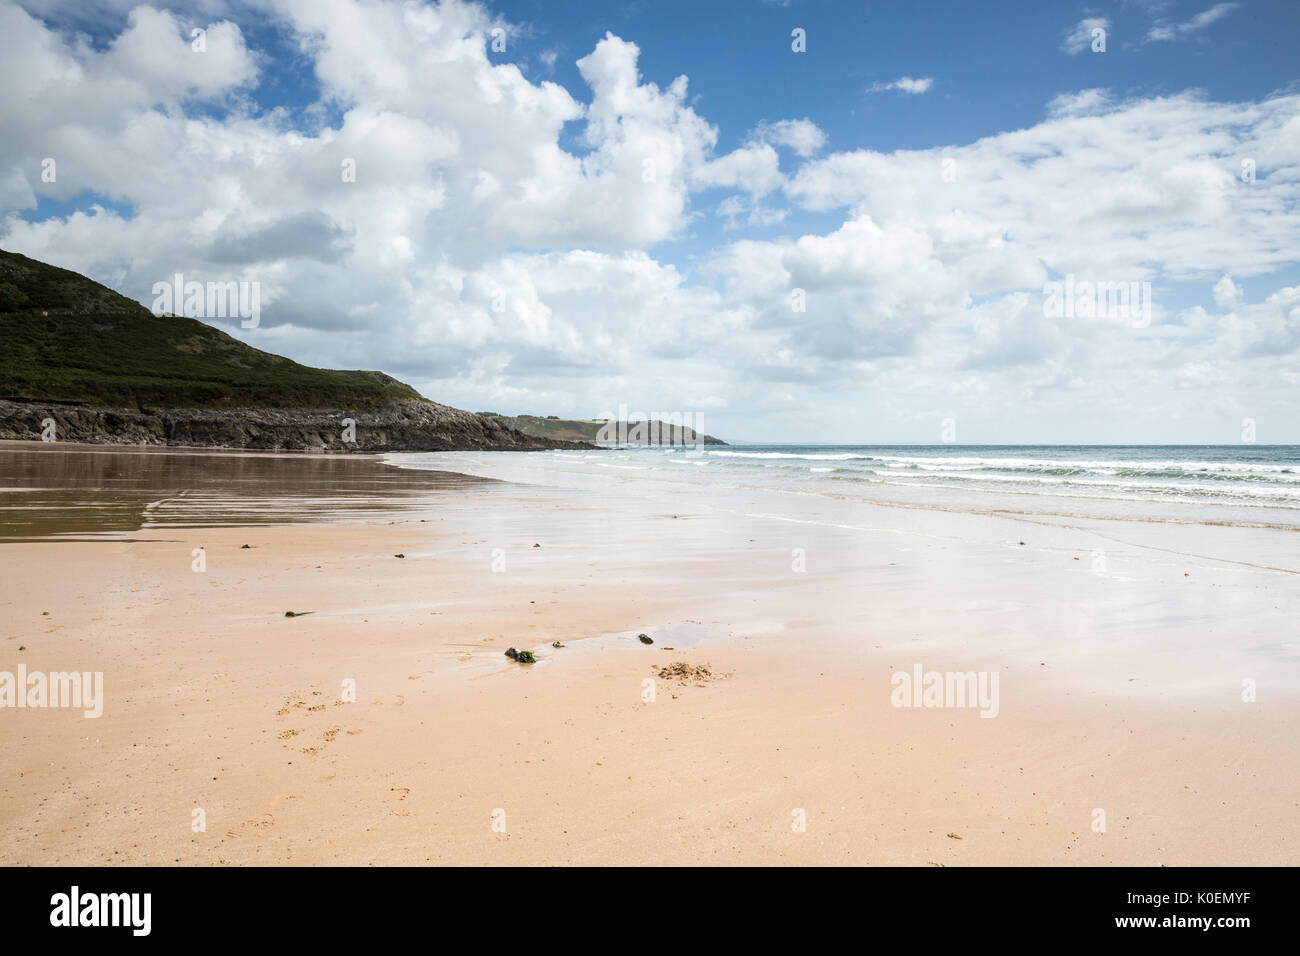 Une scène côtière avec vue sur la mer, soleil et sable roche à Pwlldu Bay sur la péninsule de Gower au Pays de Galles, Royaume-Uni Banque D'Images